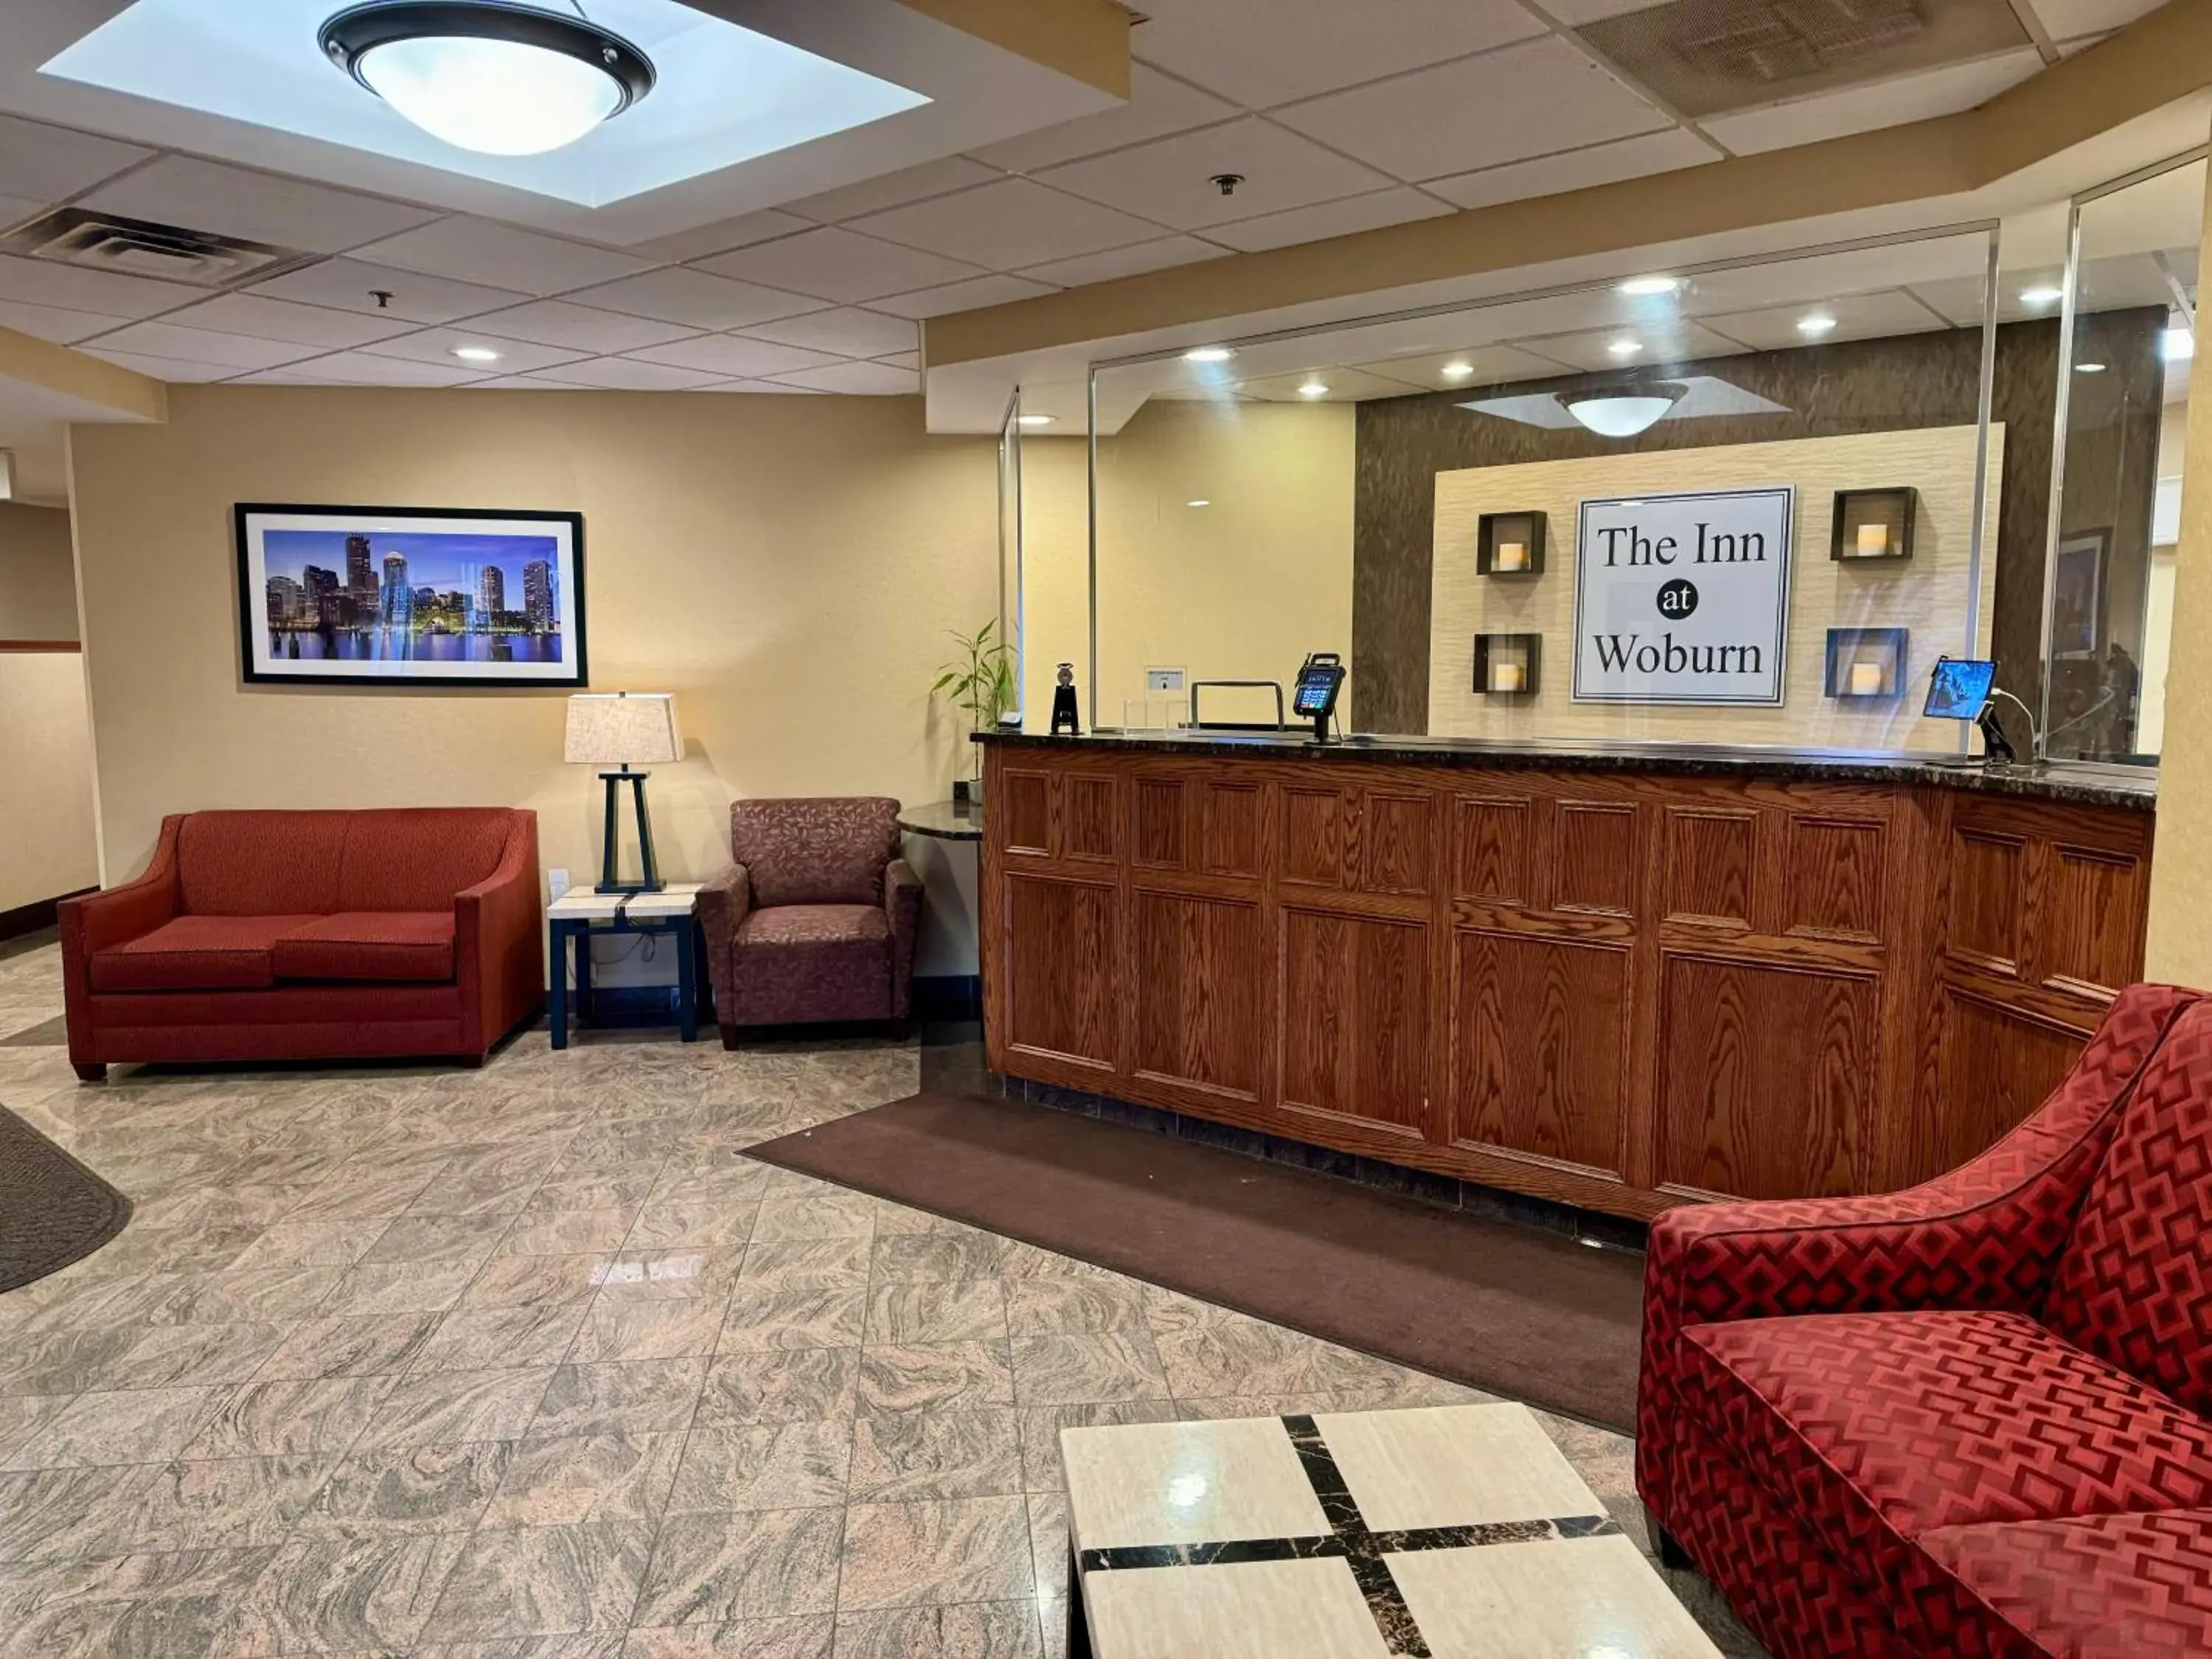 Lobby or reception, Lobby/Reception in Comfort Inn Woburn - Boston